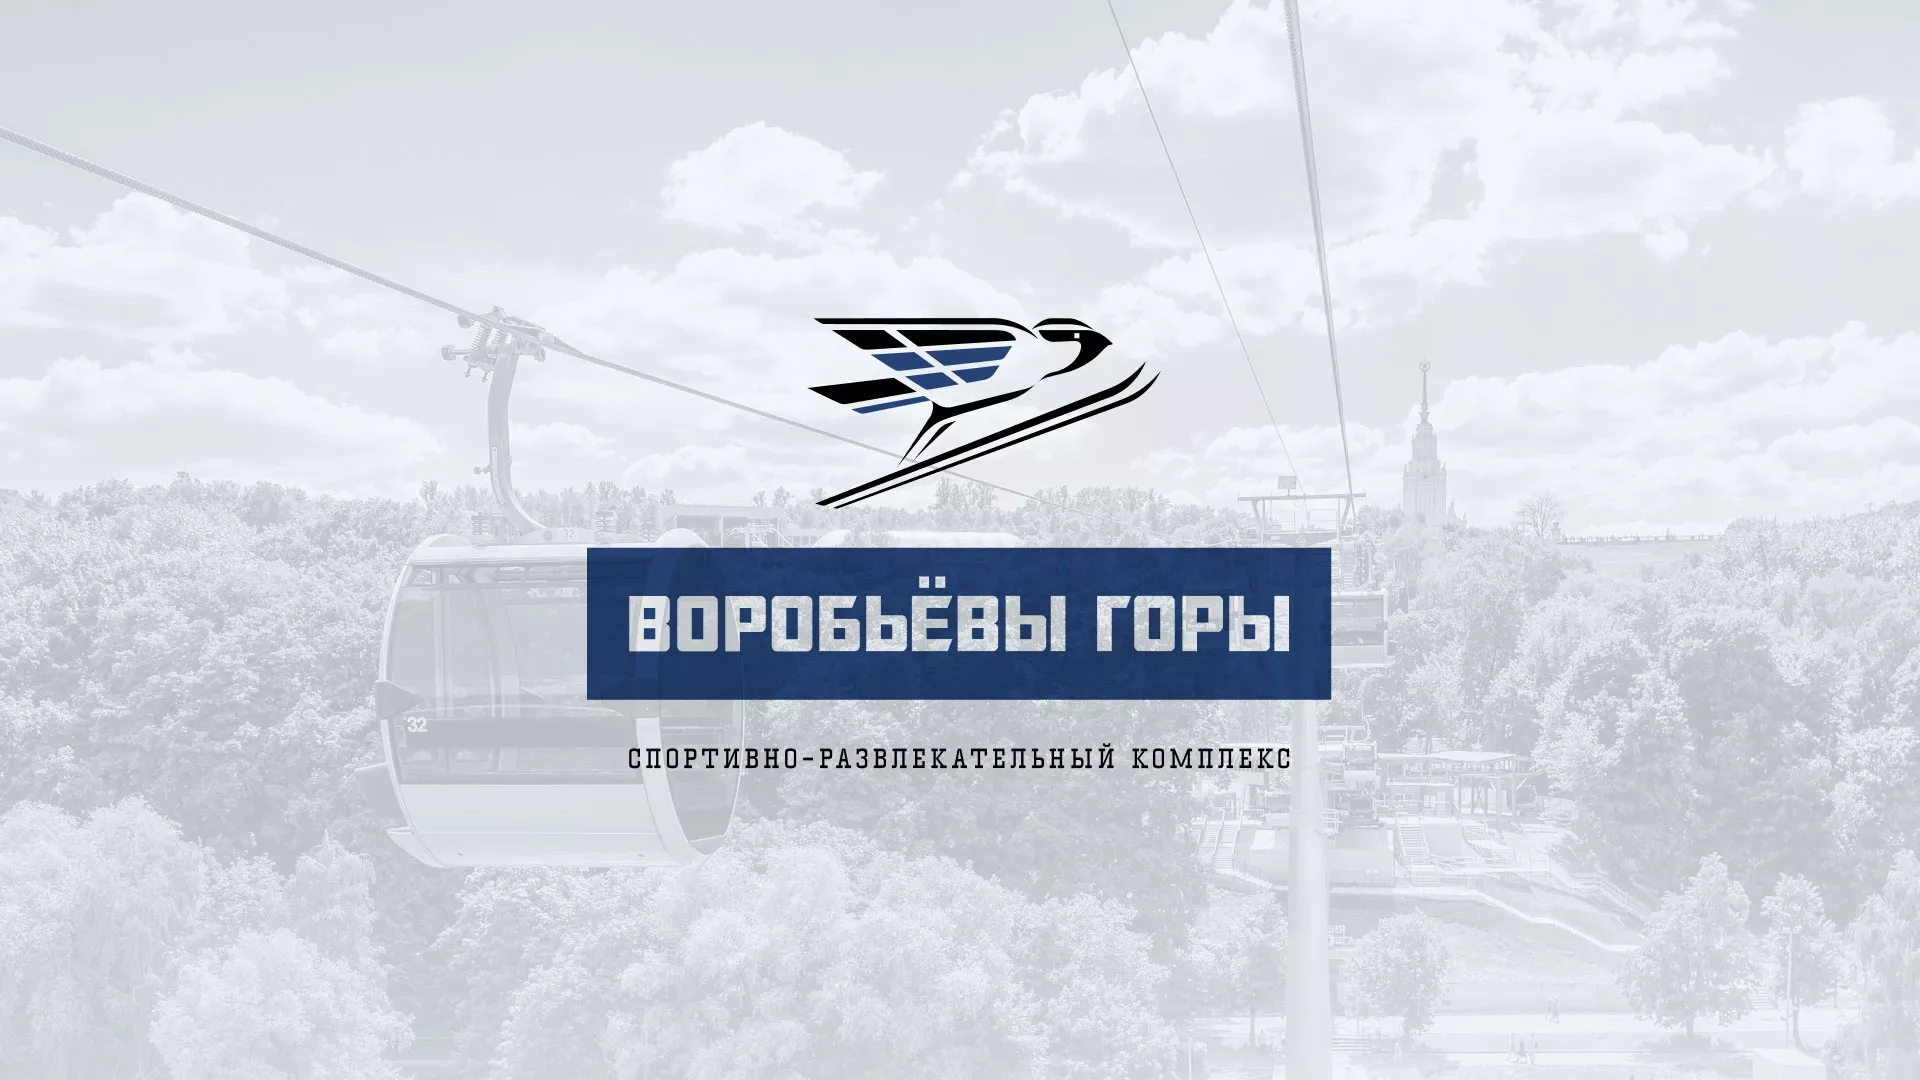 Разработка сайта в Чебоксарах для спортивно-развлекательного комплекса «Воробьёвы горы»